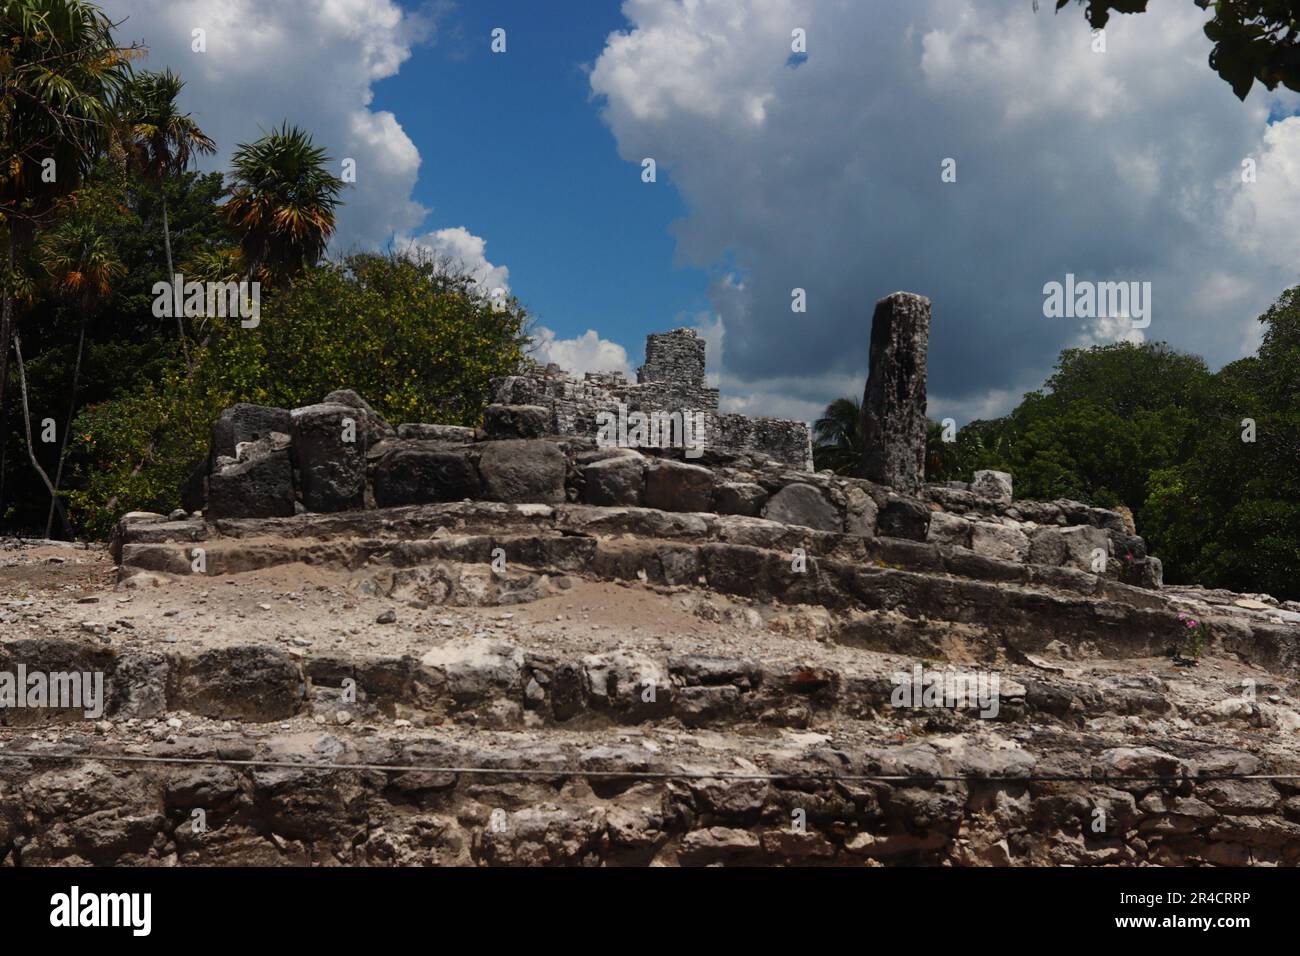 25 de mayo de 2023 en Cancún, Quintana Roo:  Zona Arqueológica “El Meco”, es un yacimiento arqueológico de la cultura maya precolombina, localizado en el sureste de México, en el territorio que hoy ocupa el estado de Quintana Roo, unos ocho kilómetros al norte del centro de Cancún. El 25 de mayo de 2023 en Cancún, Quintana Roo, México. (Foto por Carlos Santiago/ Grupo Eyepix) / Eyepix Group Stock Photo